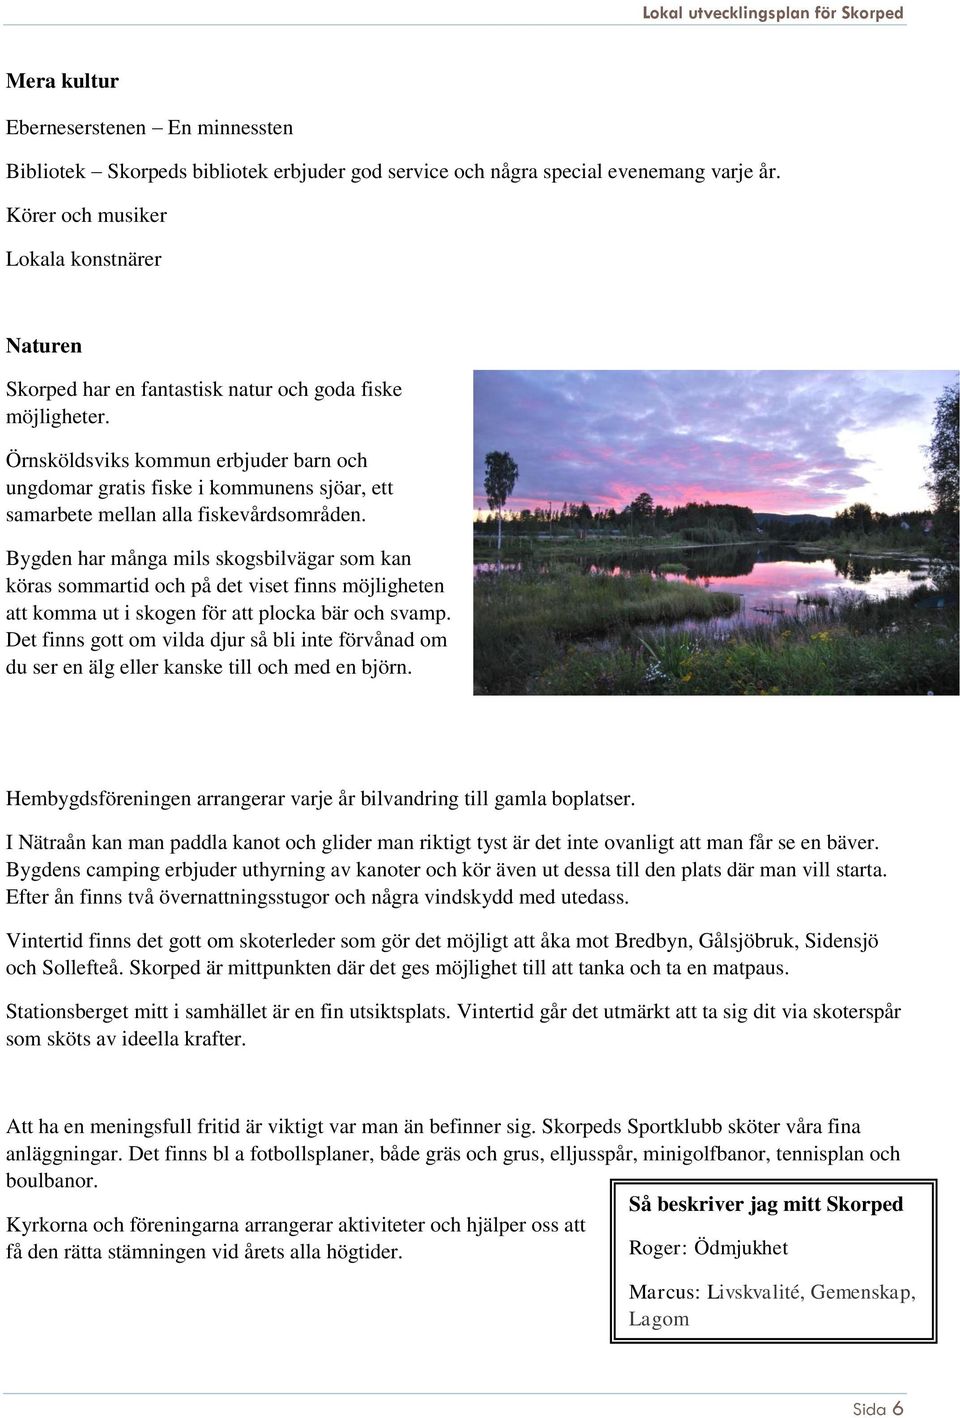 Örnsköldsviks kommun erbjuder barn och ungdomar gratis fiske i kommunens sjöar, ett samarbete mellan alla fiskevårdsområden.